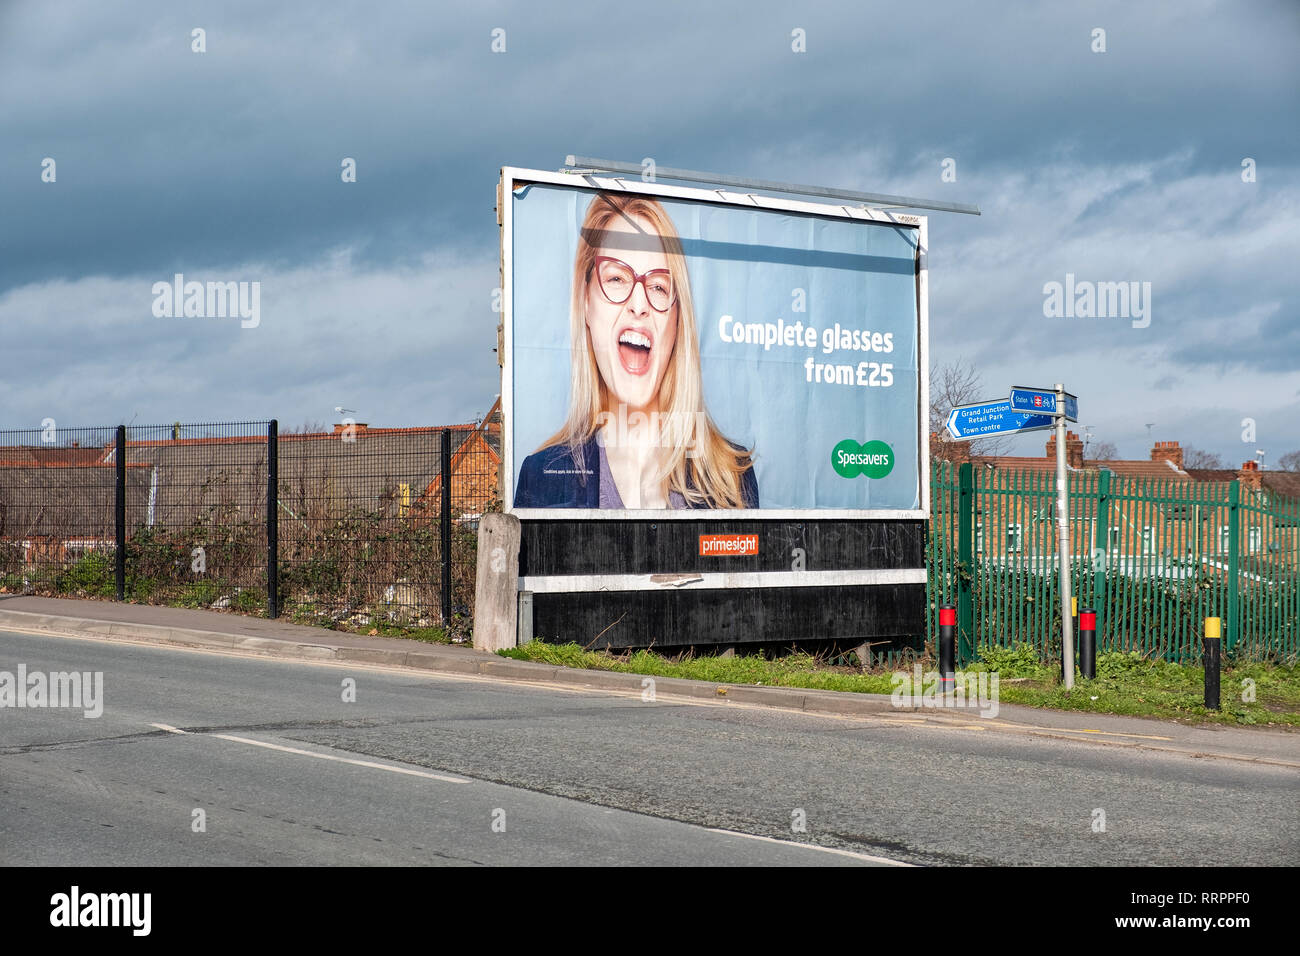 Specsavers billboard advertising in Crewe Cheshire UK Stock Photo